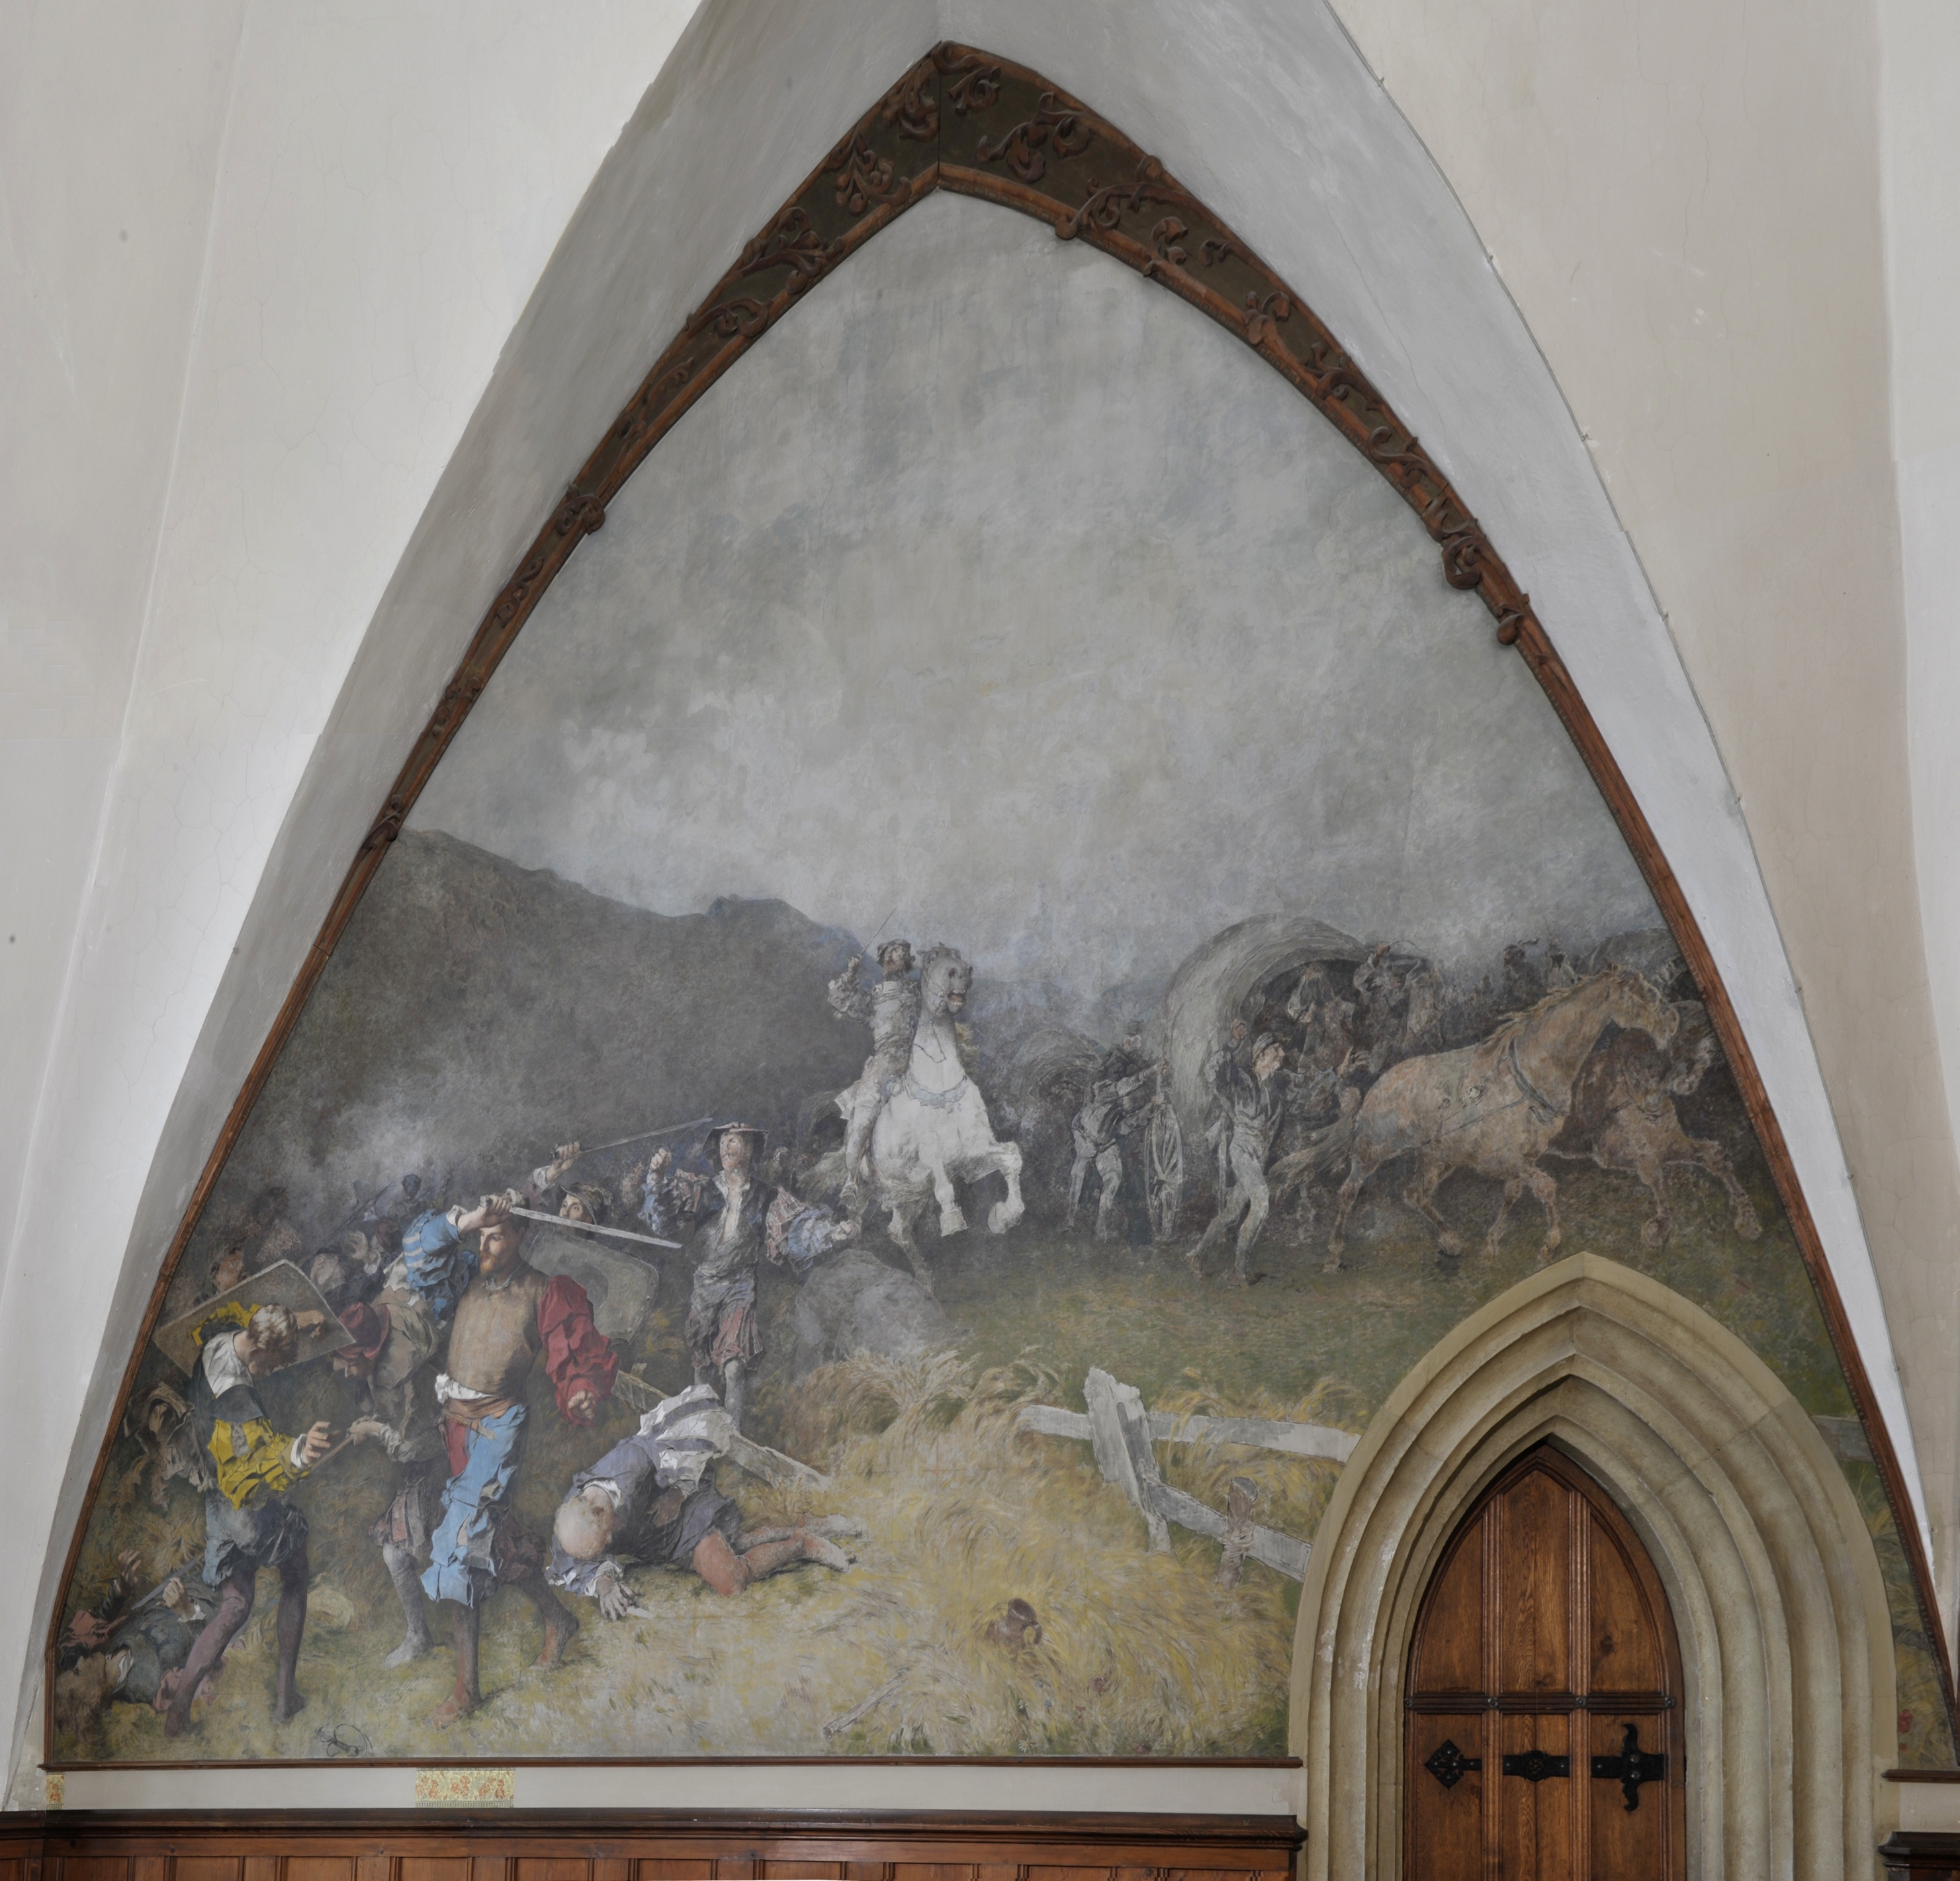 Wandbild:
"Das Gefecht bei Schloss Negau in Ungarn im Jahr 1487" (SBG gGmbH CC BY-NC-SA)